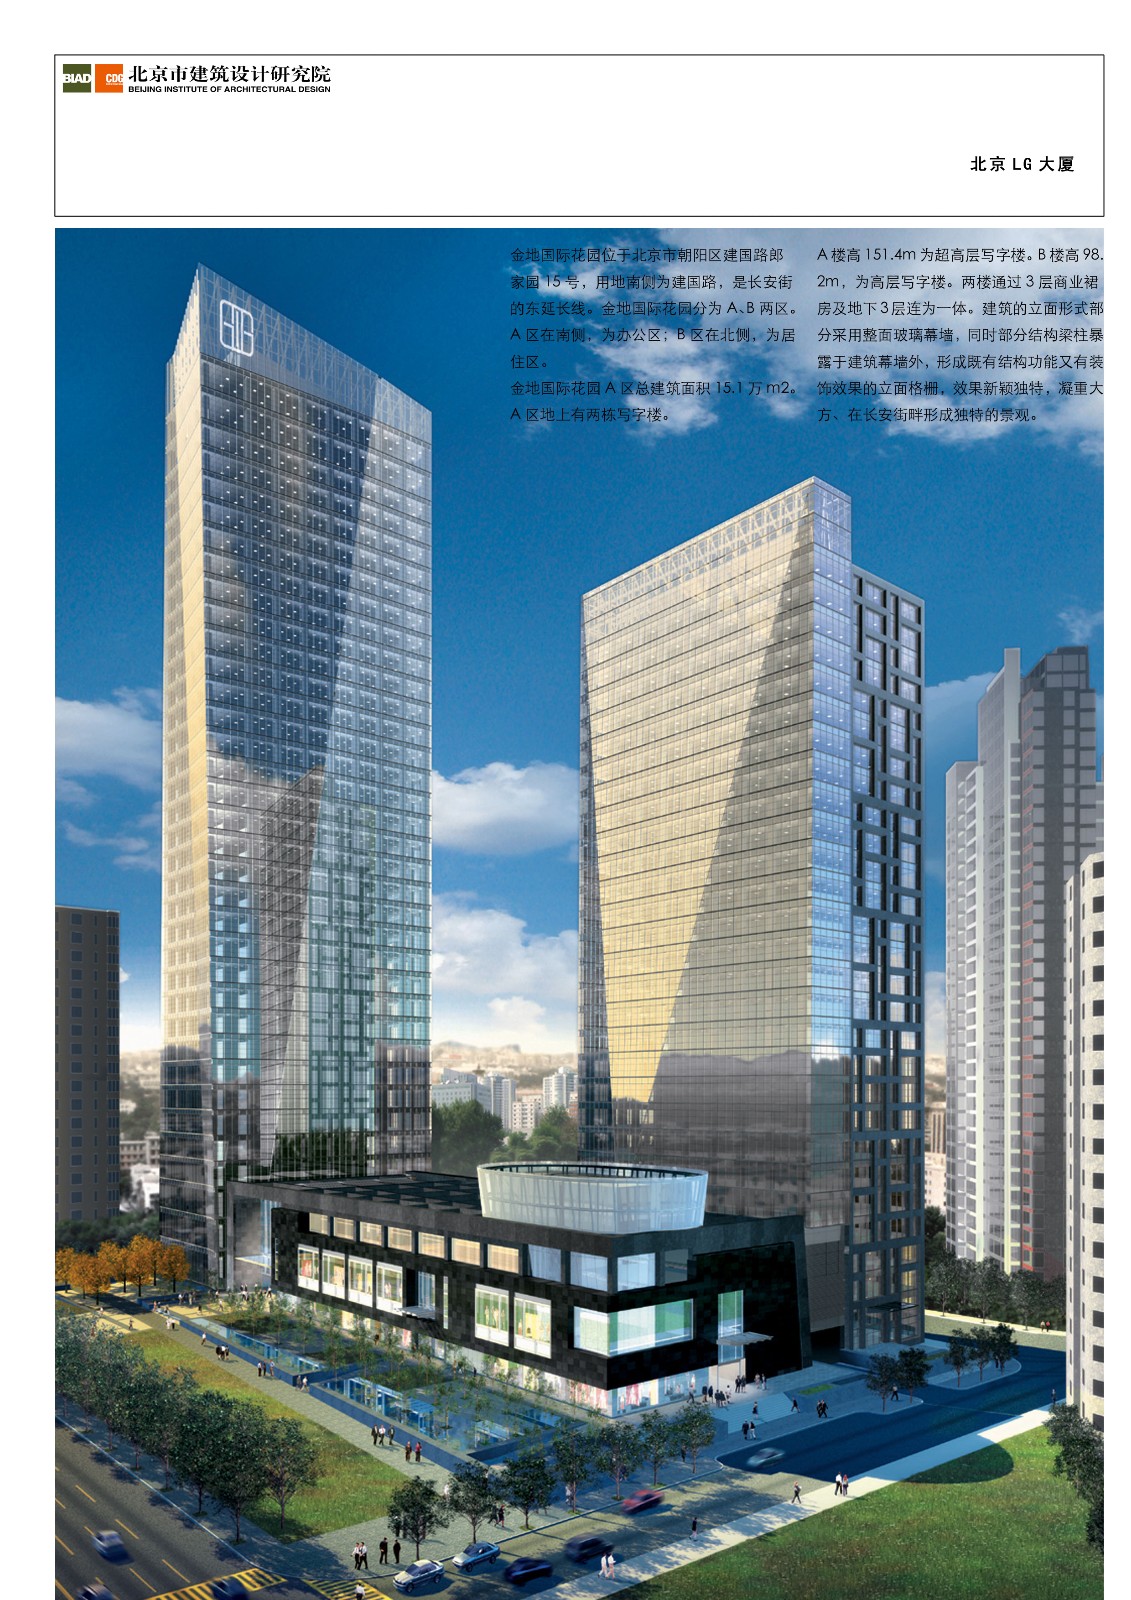 [方案]北京市某建筑设计研究院重点项目汇总2